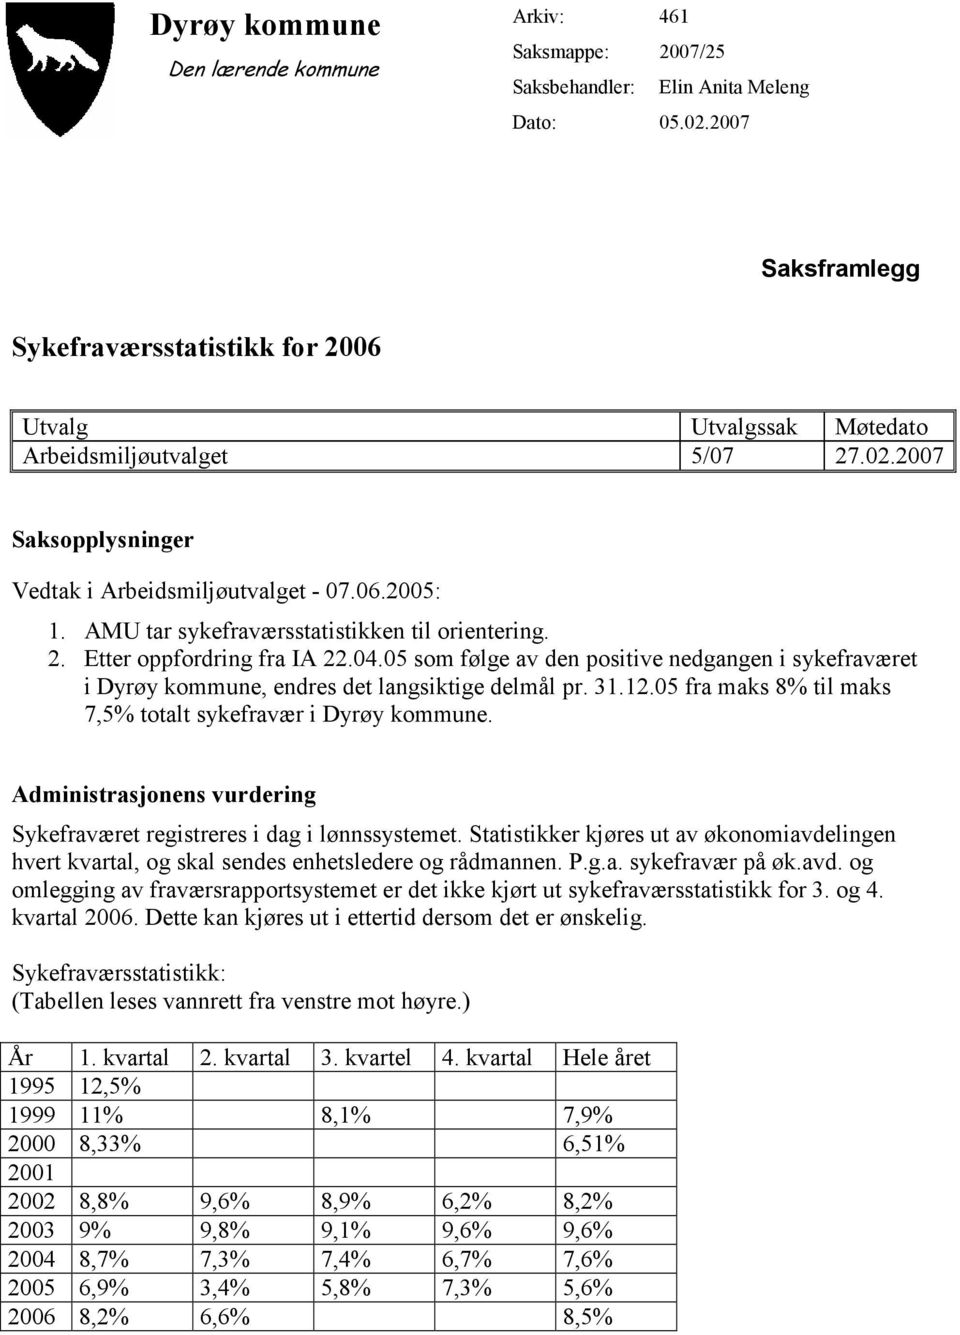 AMU tar sykefraværsstatistikken til orientering. 2. Etter oppfordring fra IA 22.04.05 som følge av den positive nedgangen i sykefraværet i Dyrøy kommune, endres det langsiktige delmål pr. 31.12.